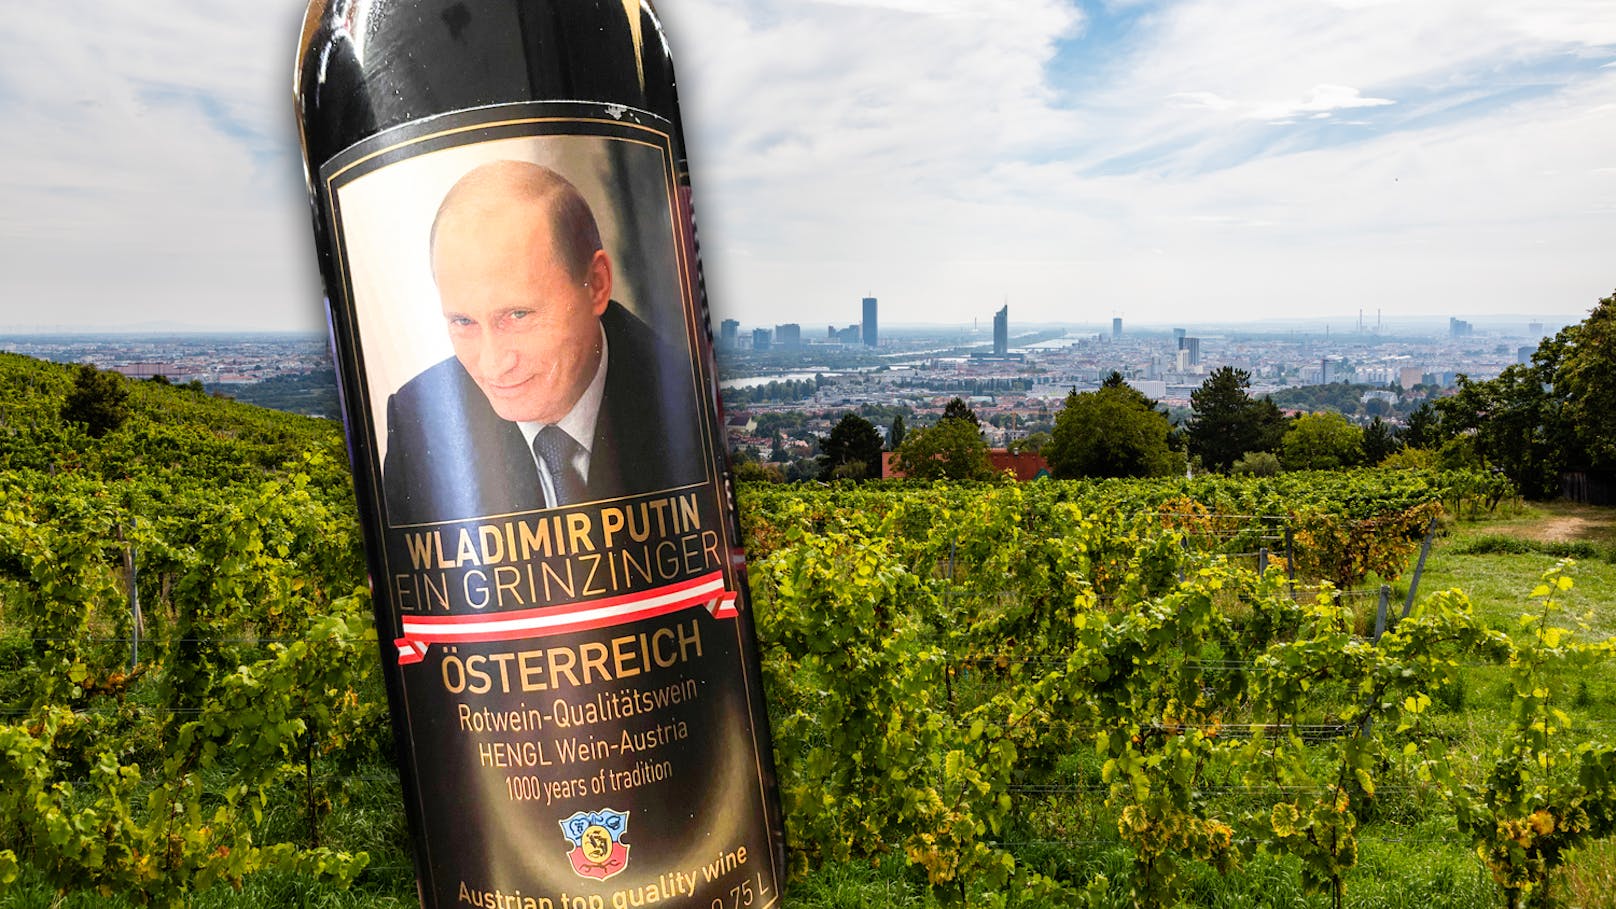 Grinzinger Wein wurde in diesen Putin-Flaschen verkauft.